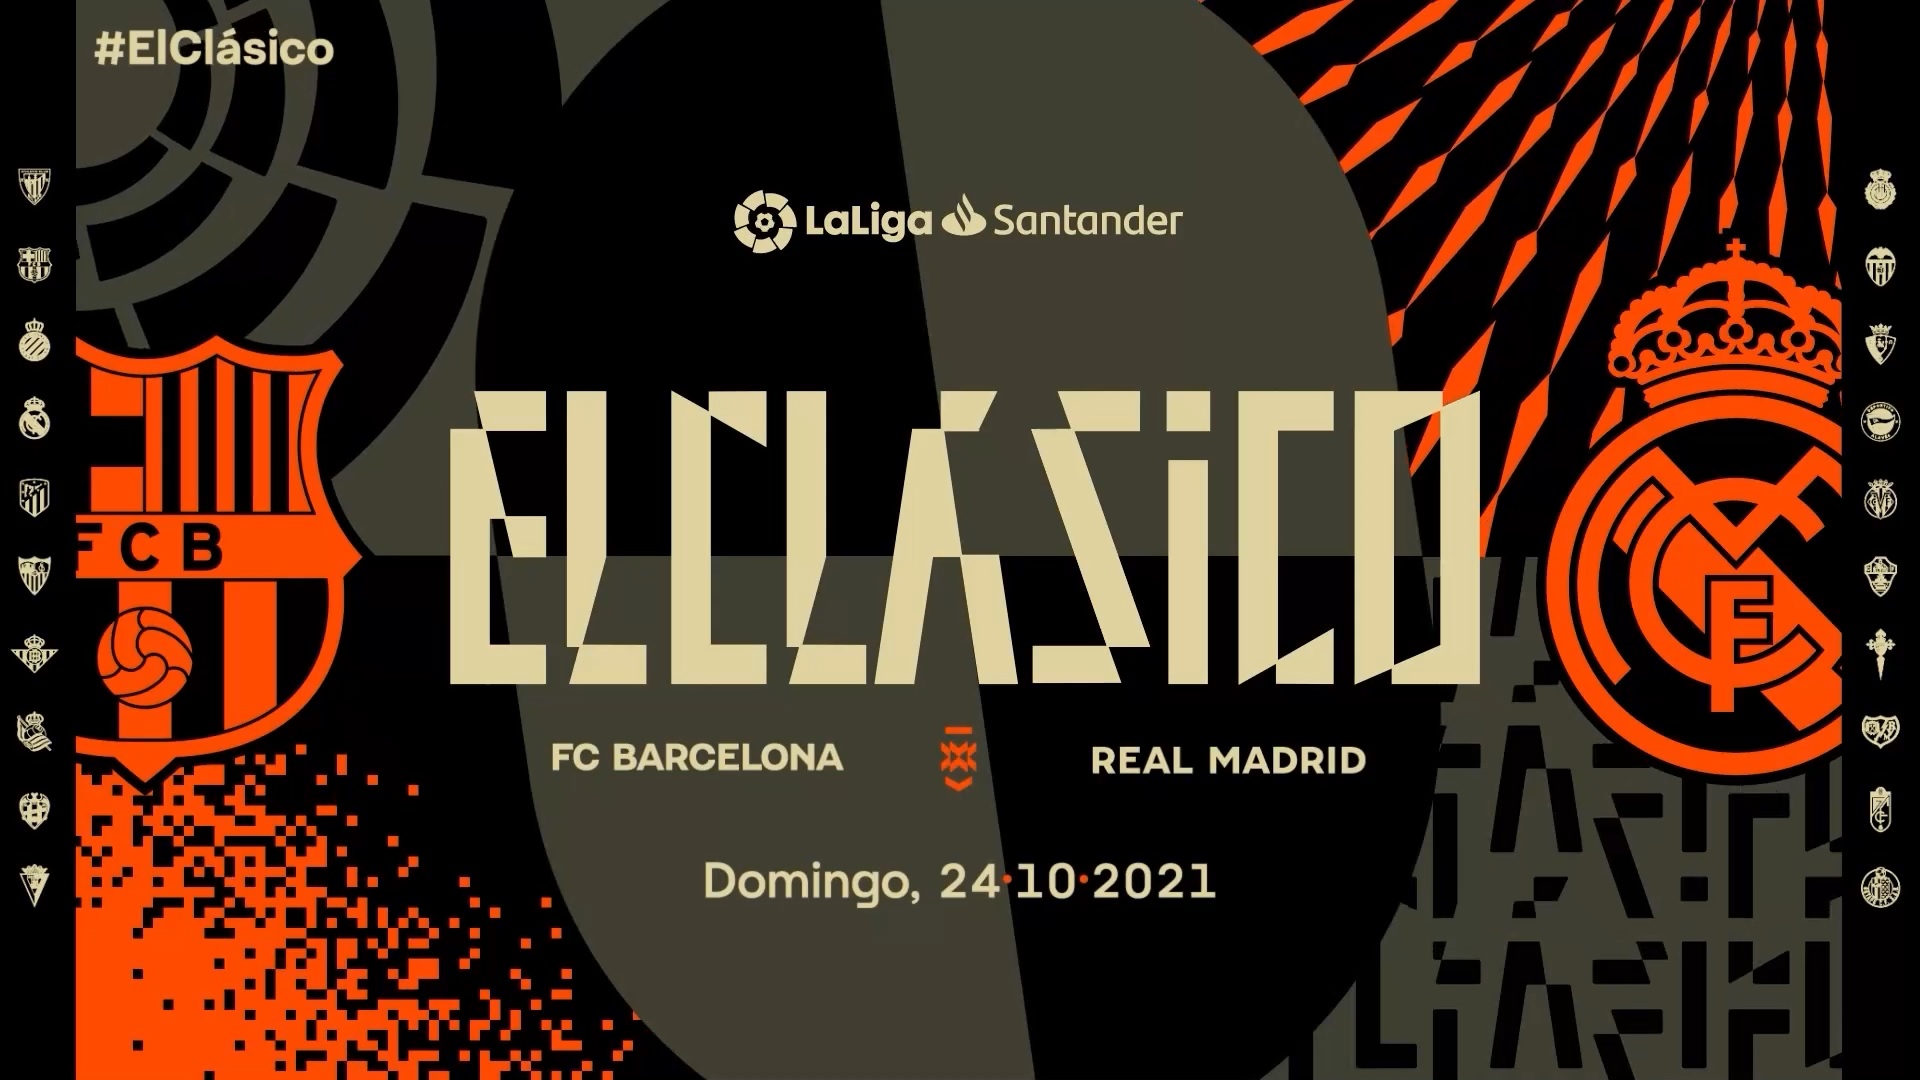 LaLiga ha organizado en el marco de ElClásico en el que se enfrentan el Barcelona y el Real Madrid, una activación en Medellín para mostrar